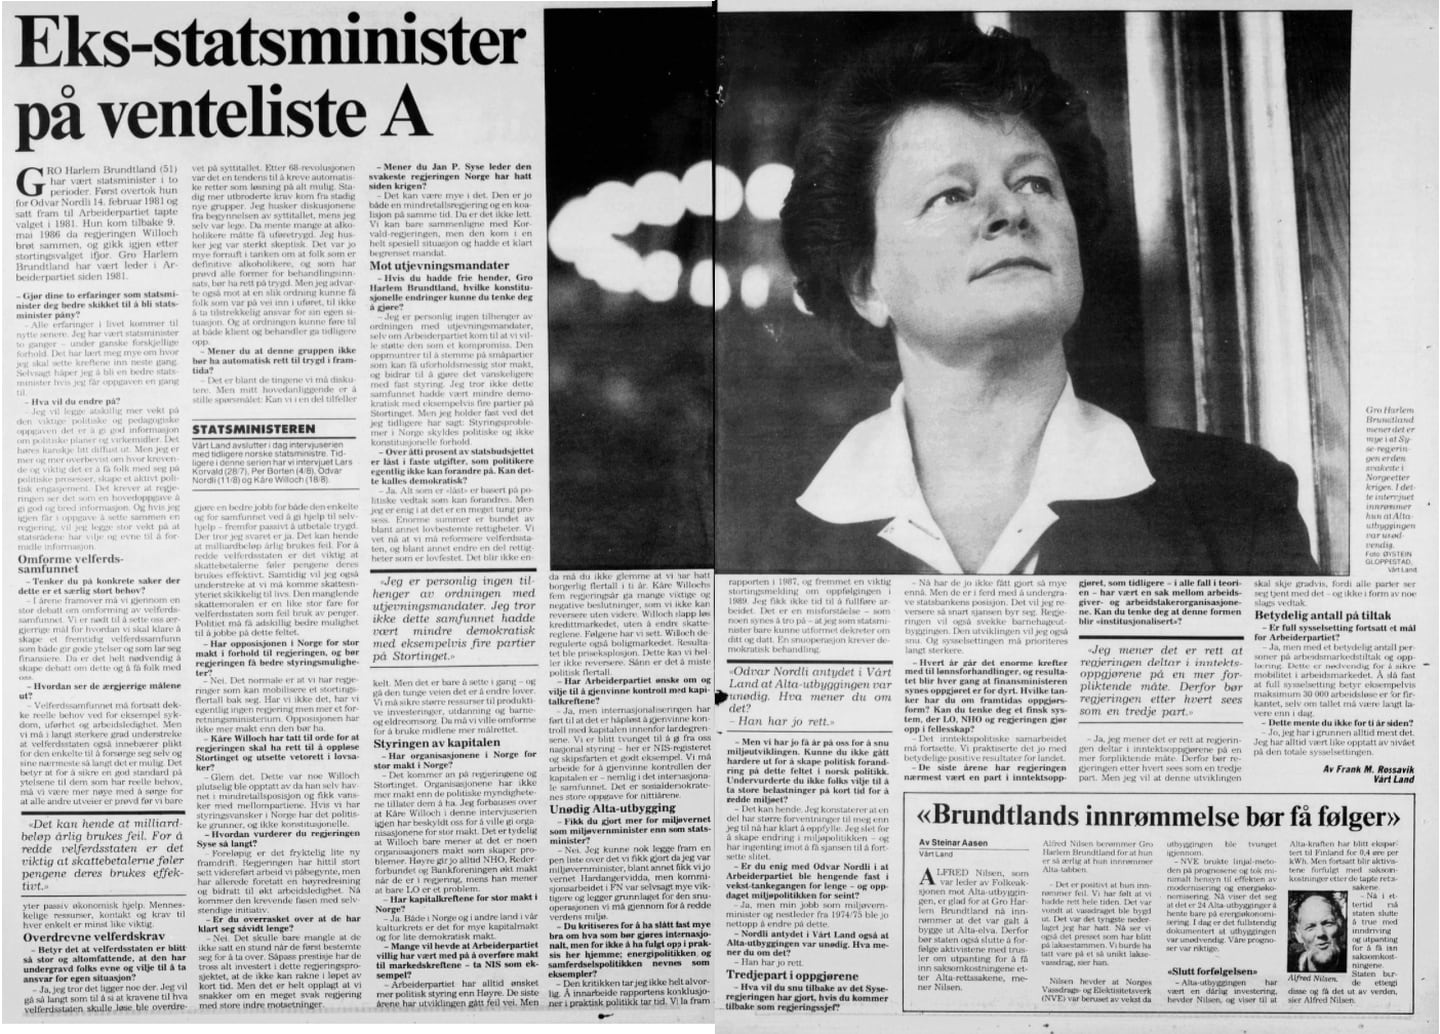 Lørdag 25. august 1990 hadde Vårt Land et større intervju med daværende Ap-leder Gro Harlem Brundtland.